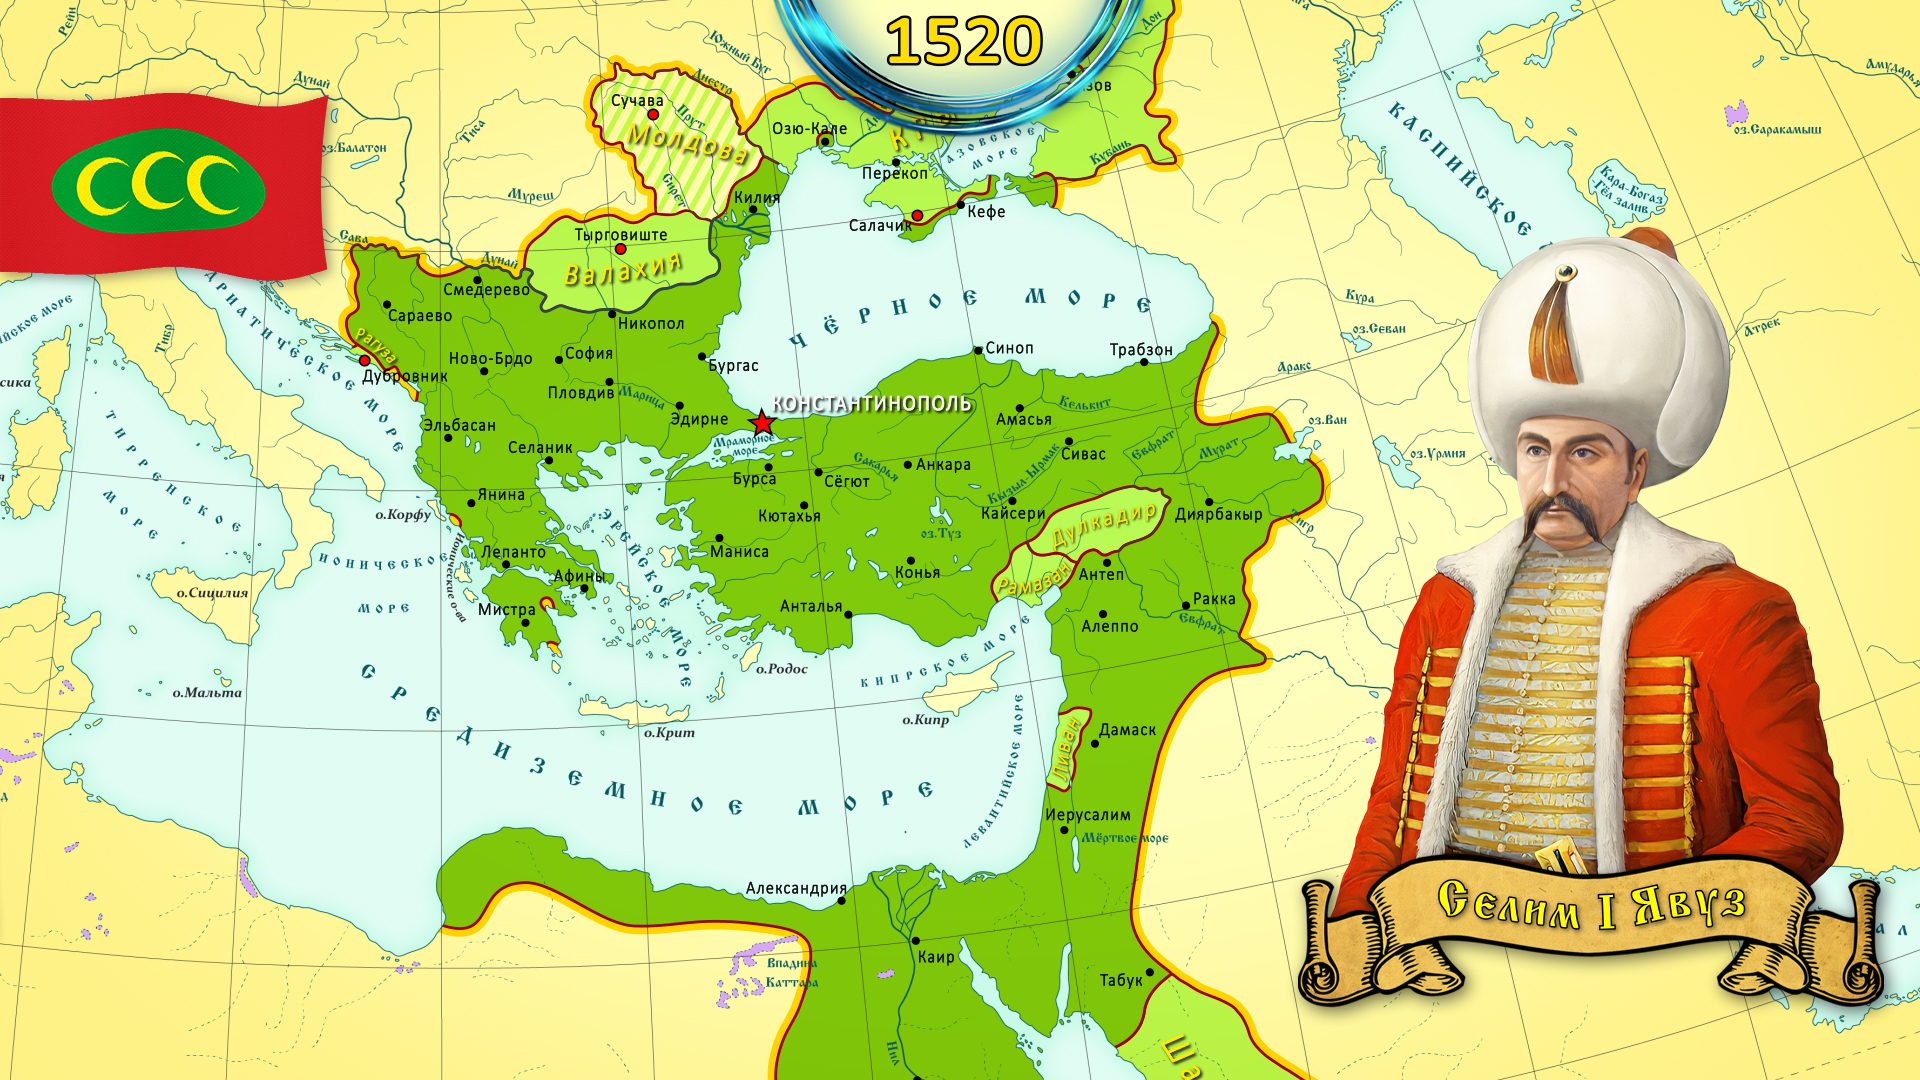 Показать карту османской империи. Карта Турции Османской империи. Территория Османской империи на карте при Султане Сулеймане. Османская Империя 1580.